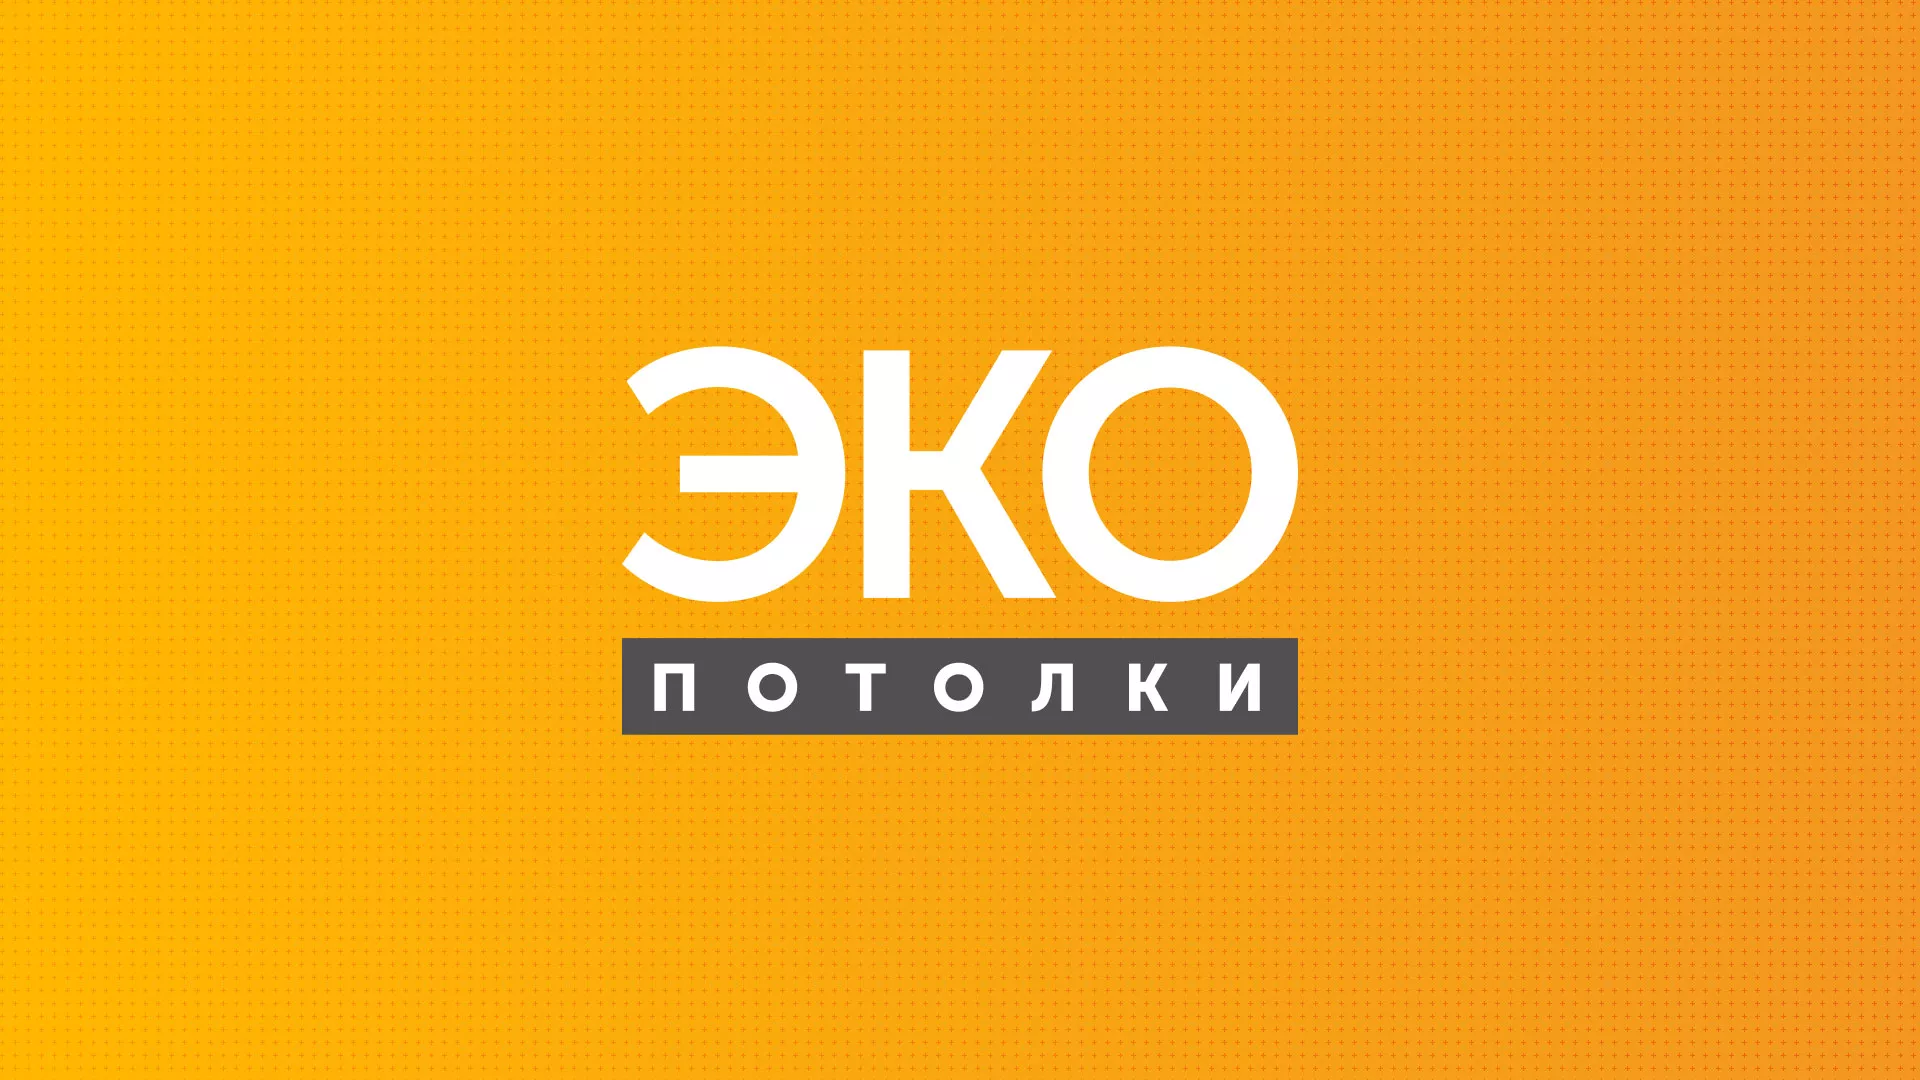 Разработка сайта по натяжным потолкам «Эко Потолки» в Ладушкине